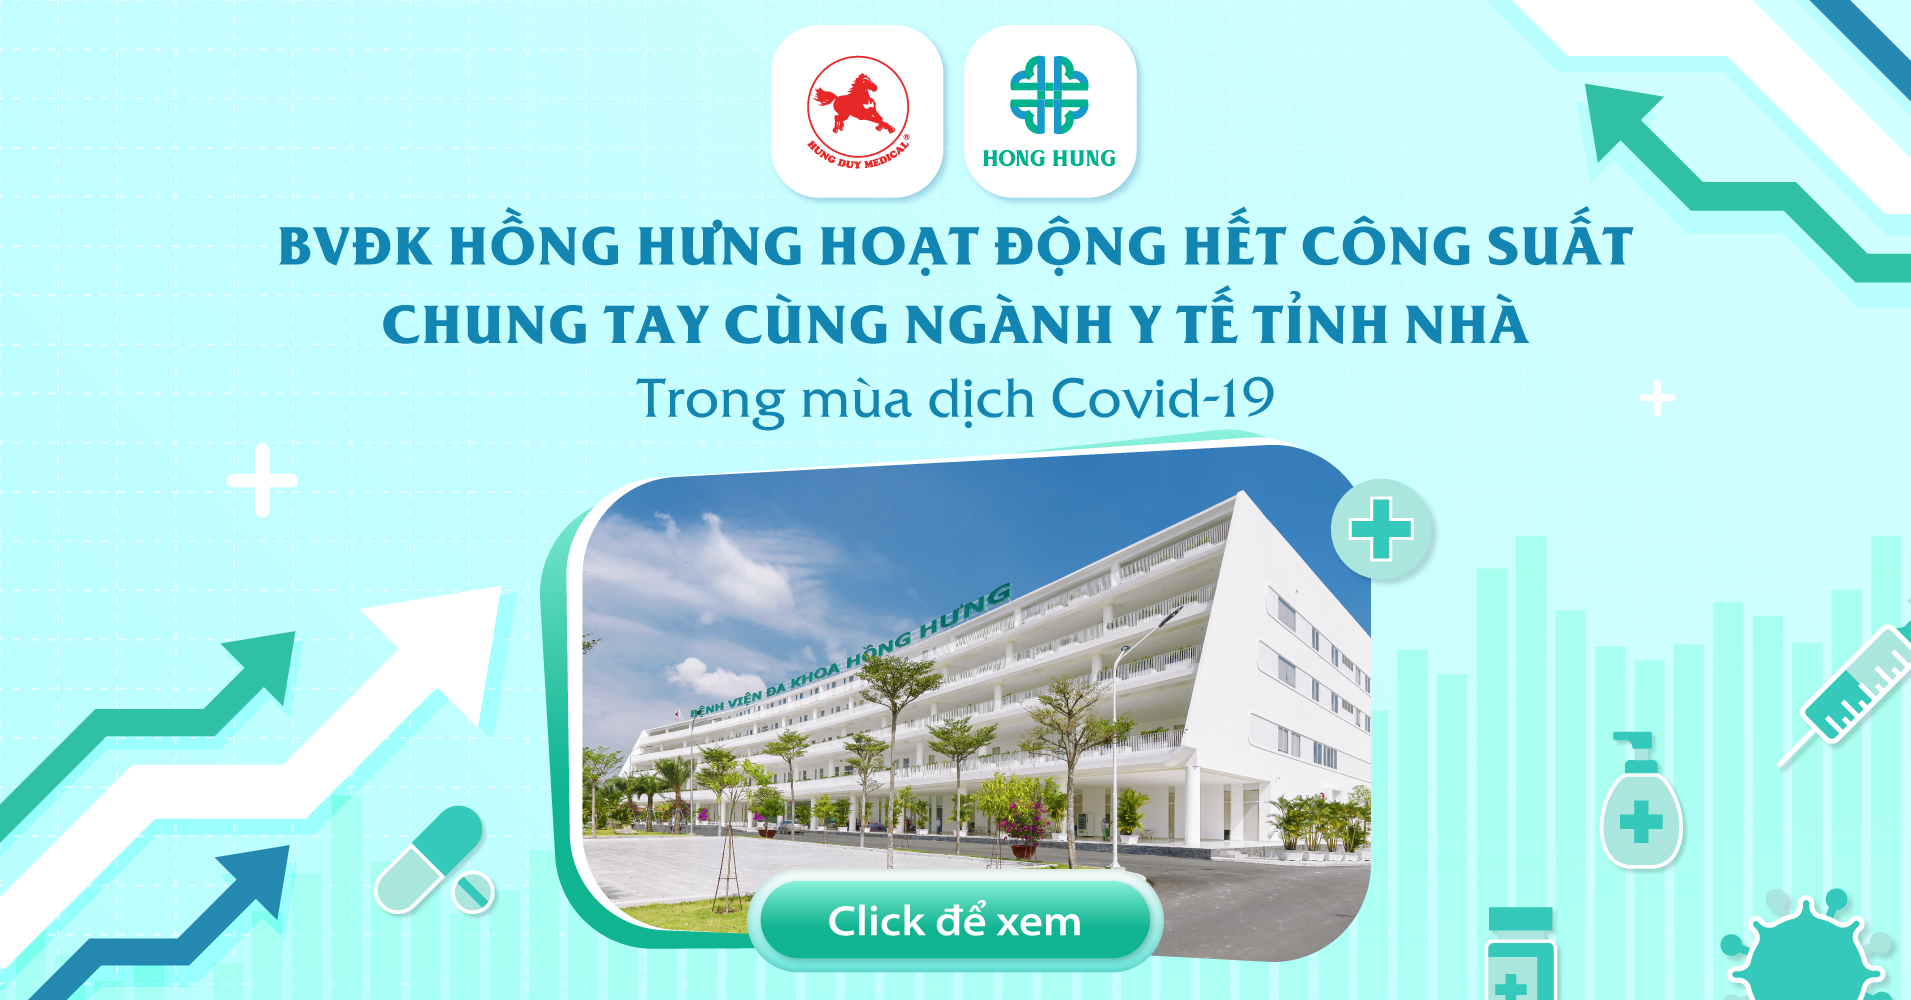 Bvđk Hồng Hưng Hoạt Động Hết Công Suất Chung Tay Cùng Ngành Y Tế Tỉnh Nhà  Trong Mùa Dịch Covid-19 - Hong Hung Hospital